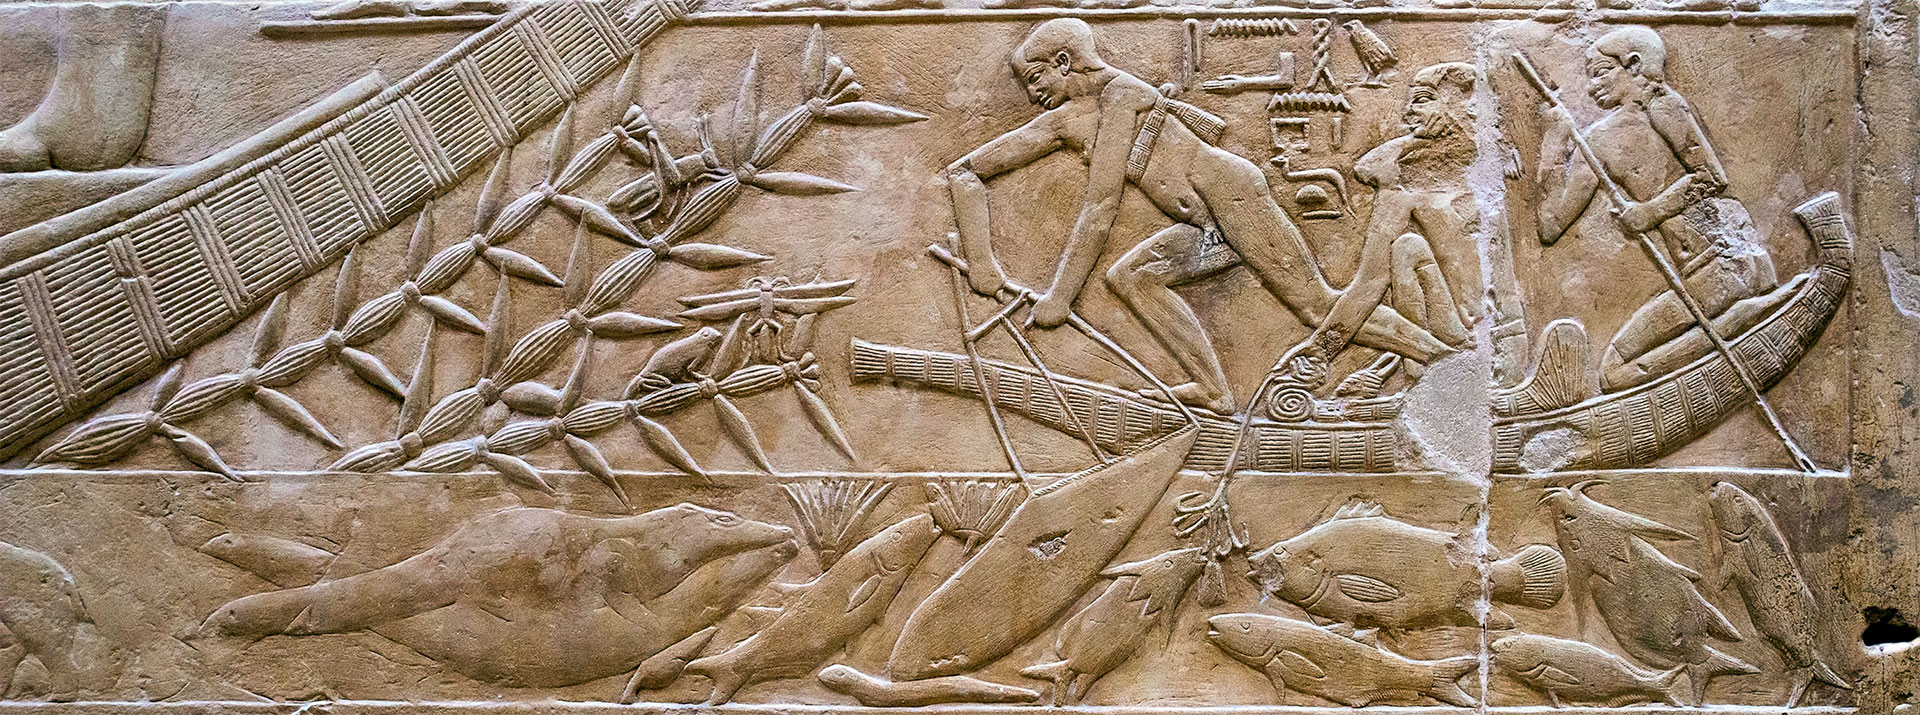 Pesca con línea y anzuelos en la tumba de Kagemni en Saqqara. Viajes a Egipto con Viajes Ikertanoa.